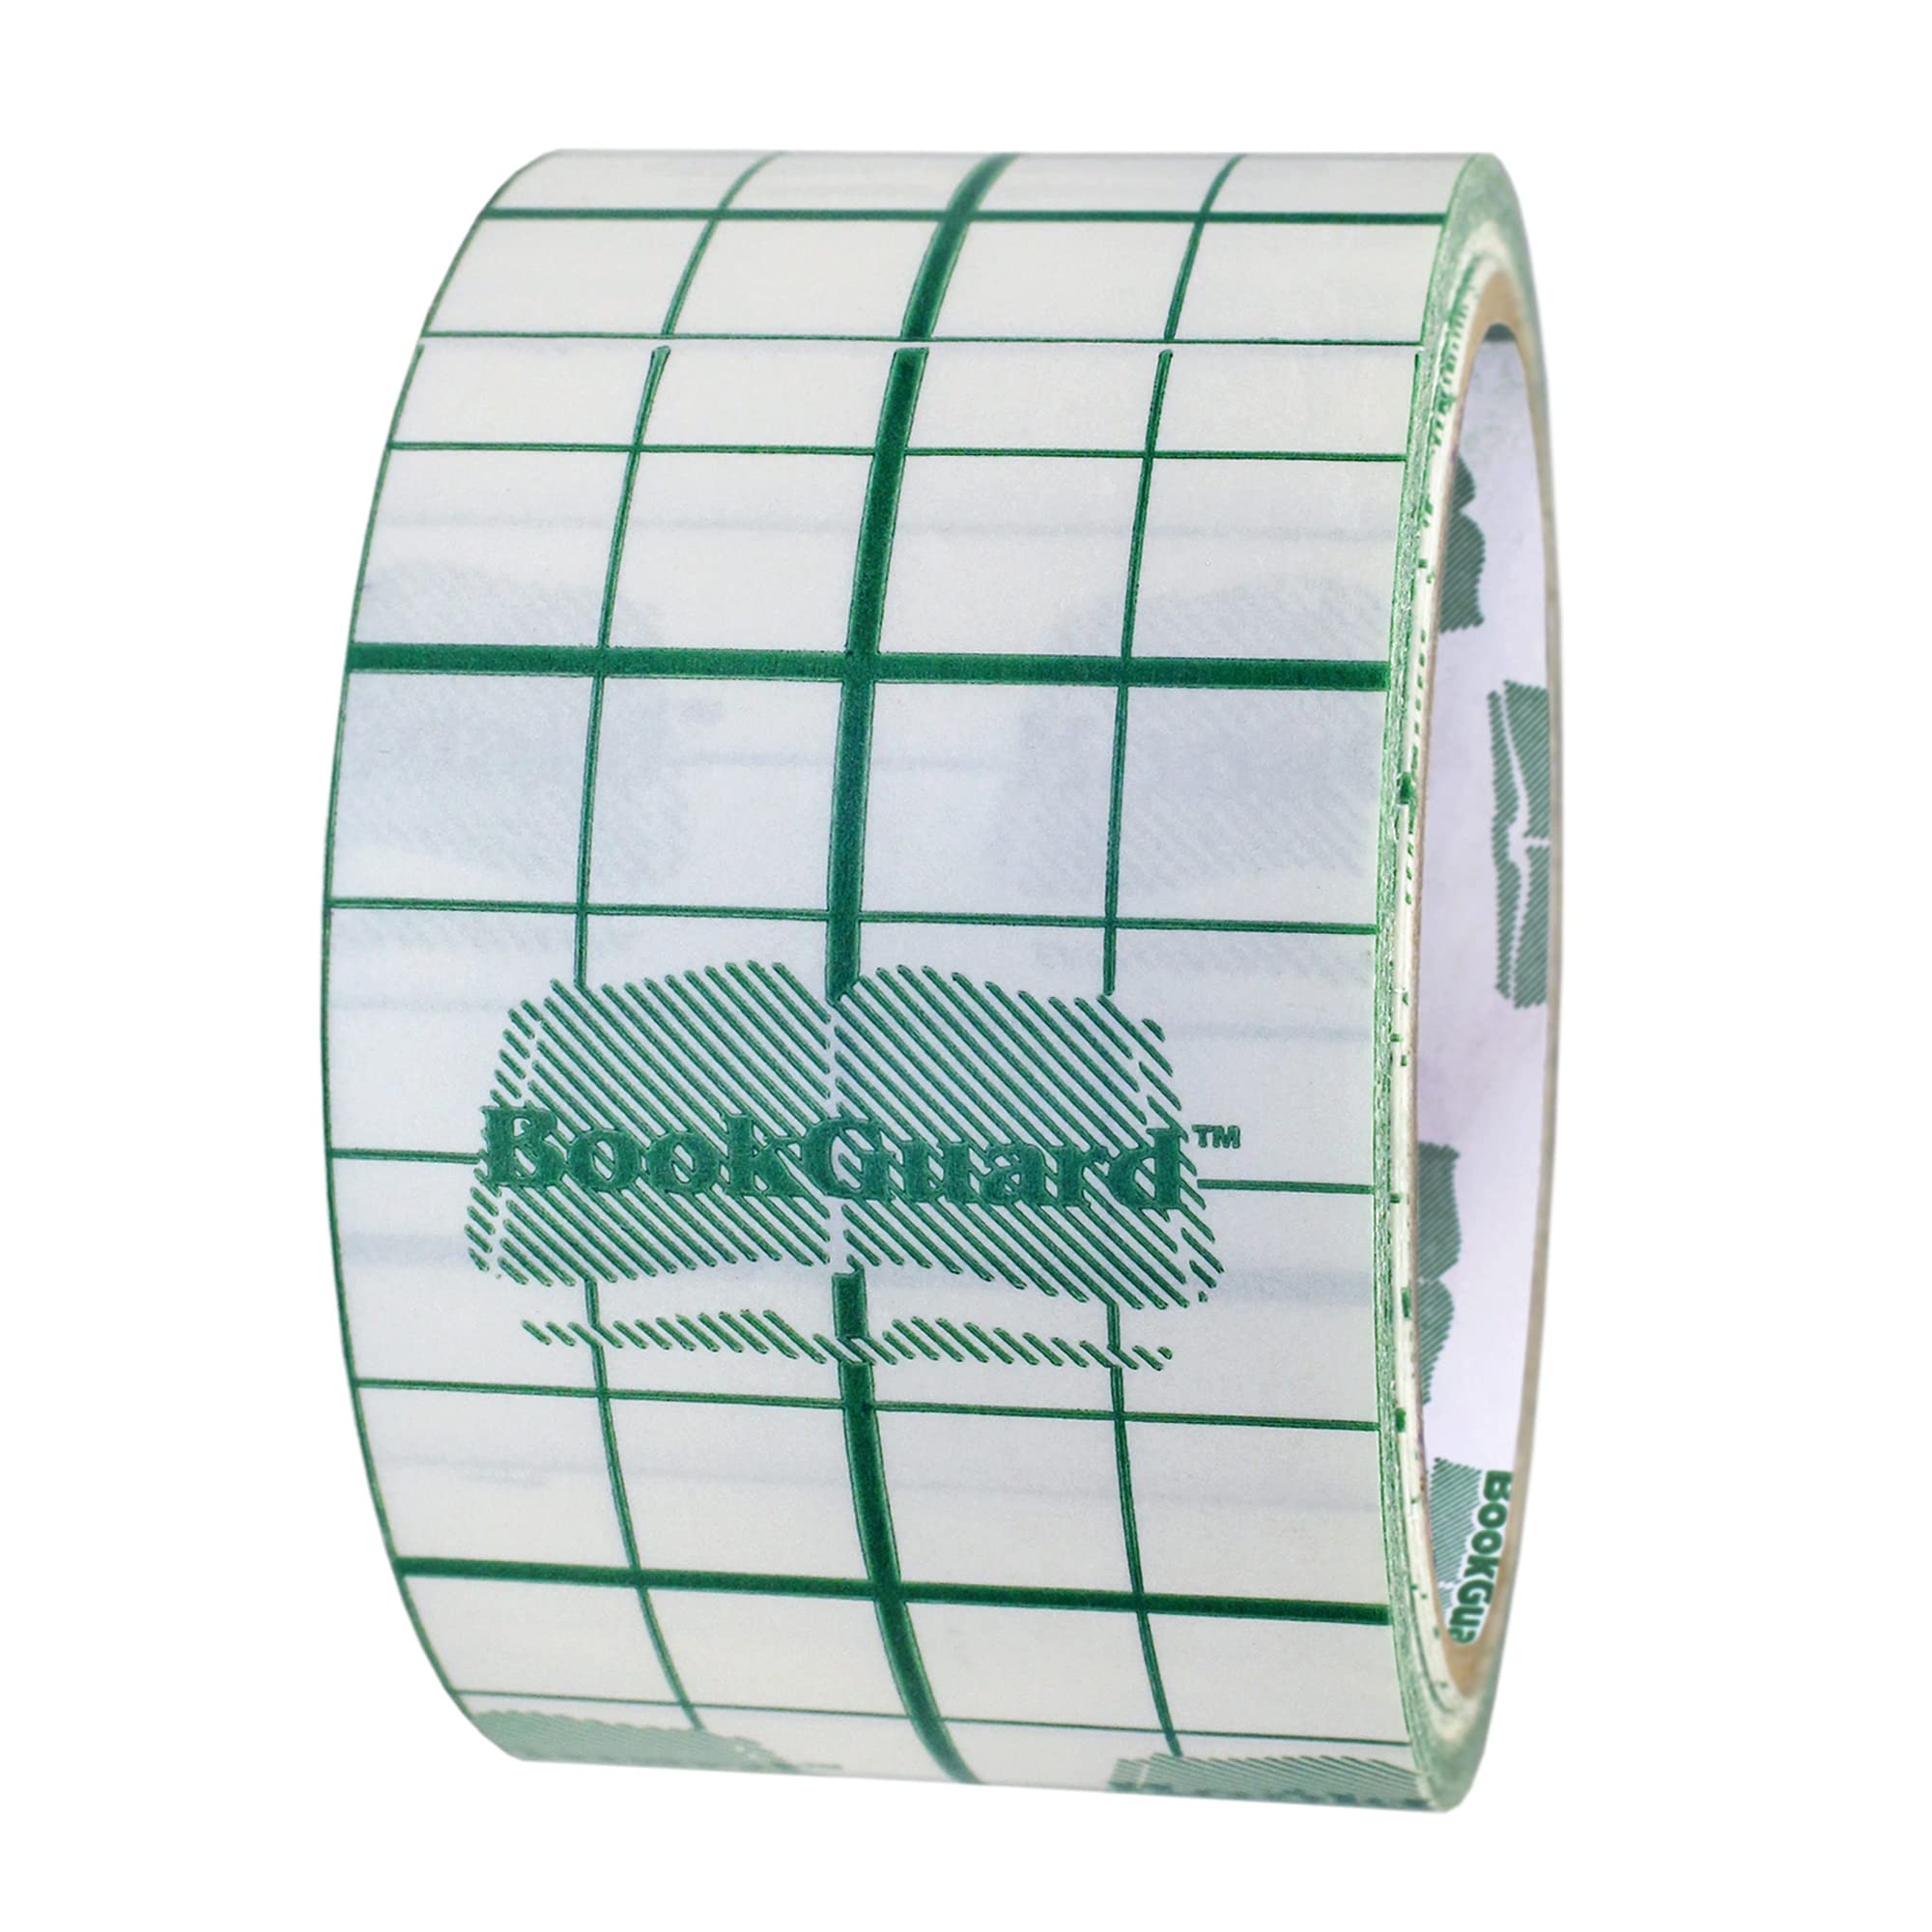 2 BookGuard Vinyl Book Binding Repair Tape with Liner: 10 yds